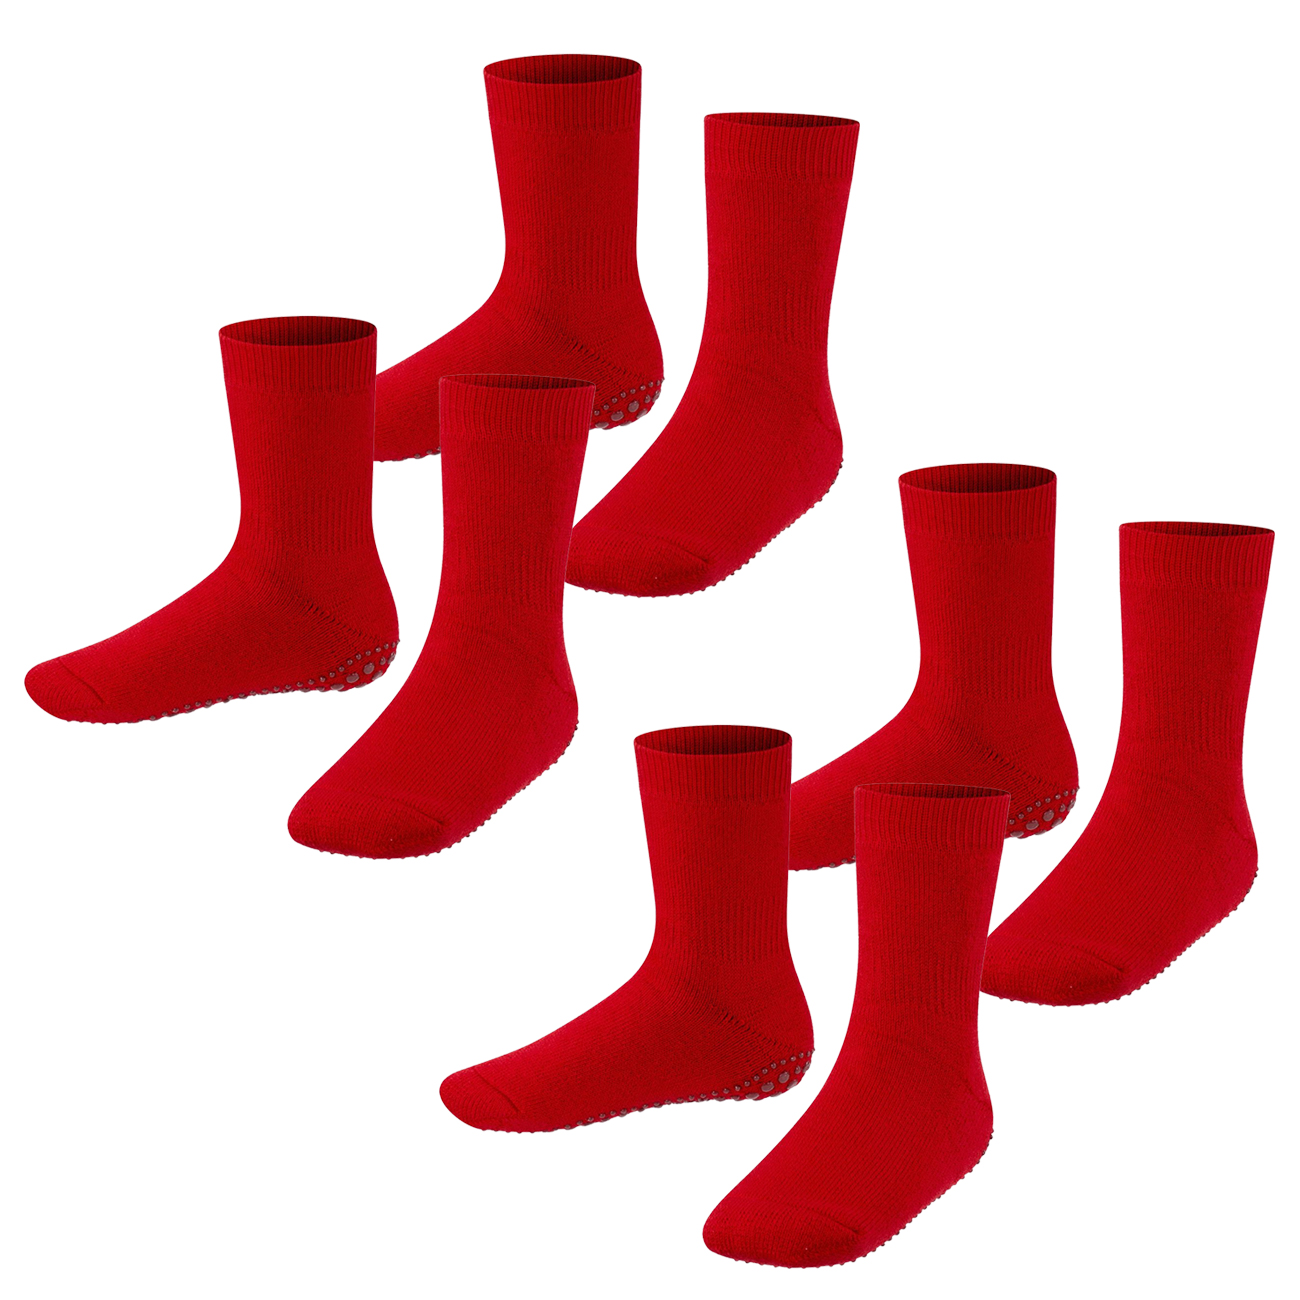 Falke Kinder Socken Catspads 2er 3er 4er Multipack Hersteller: Falke Bestellnummer:4063499025592